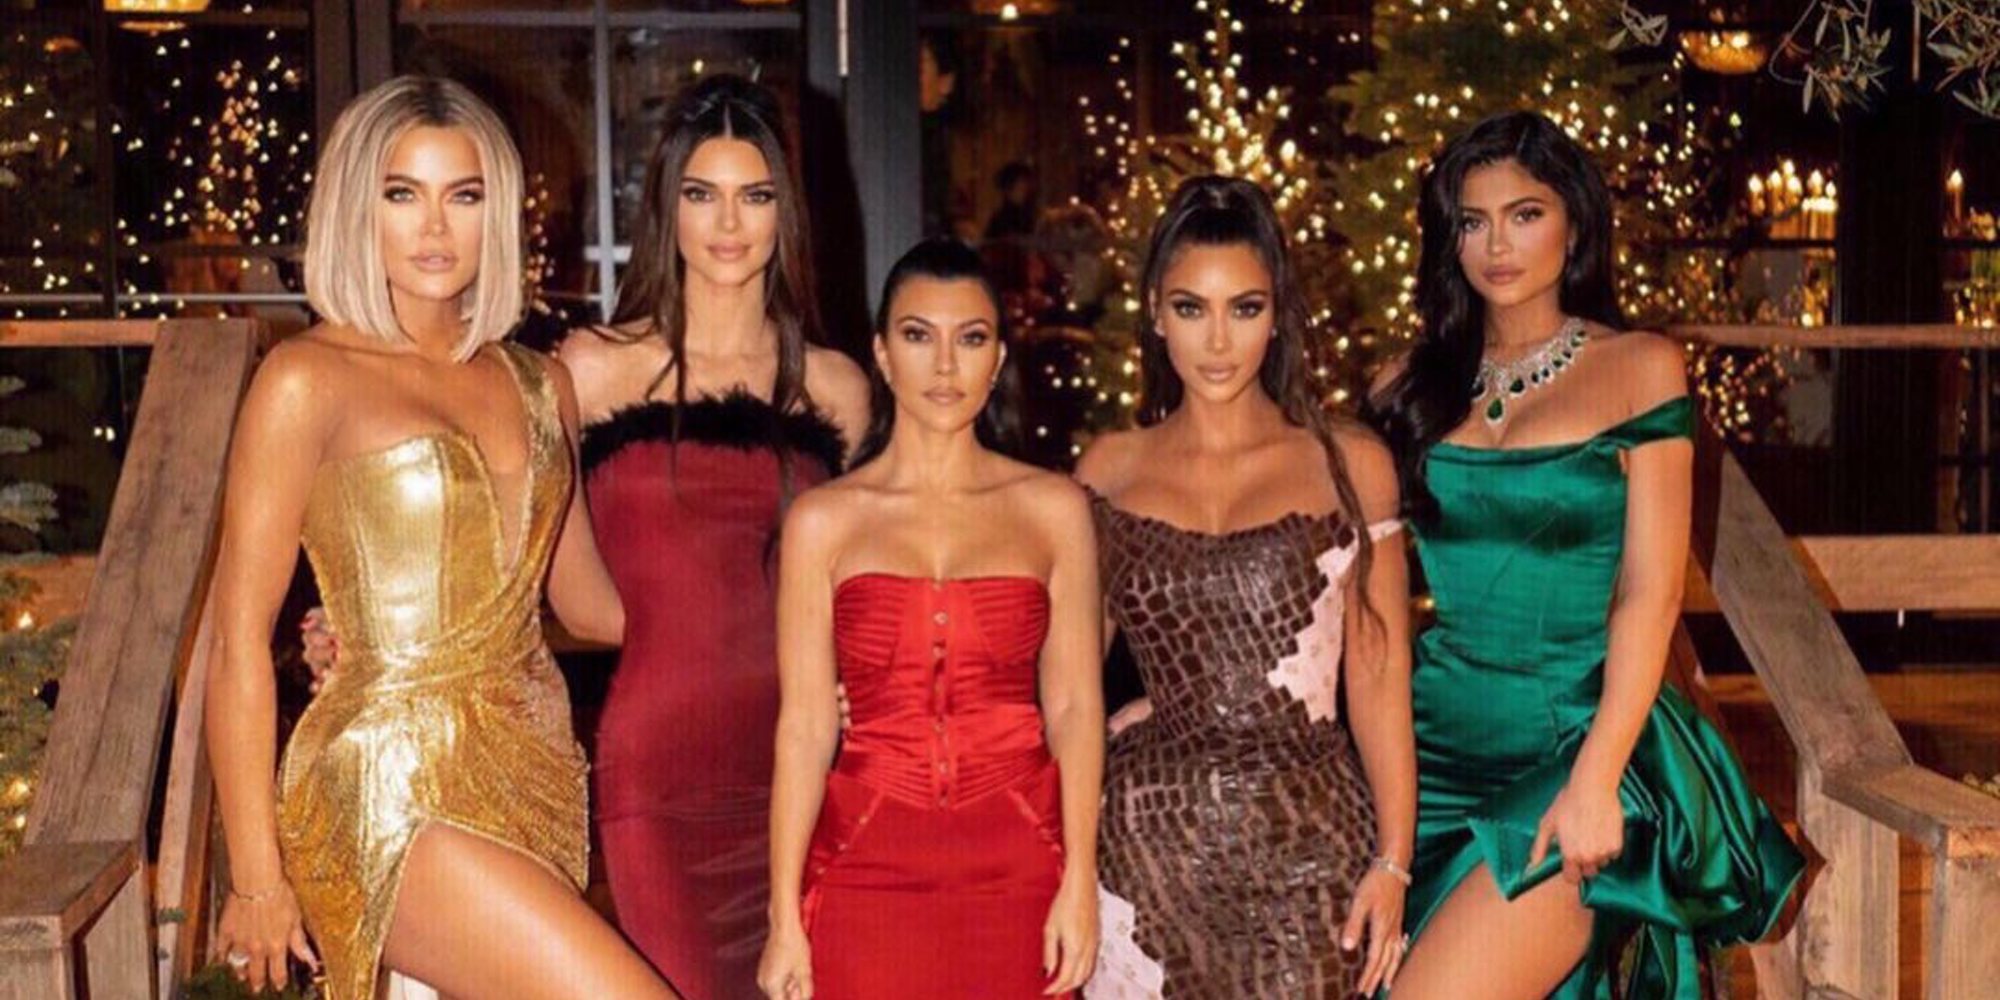 The party is over! Khloé confirma que este 2020 no habrá fiesta navideña de las Kardashian-Jenner